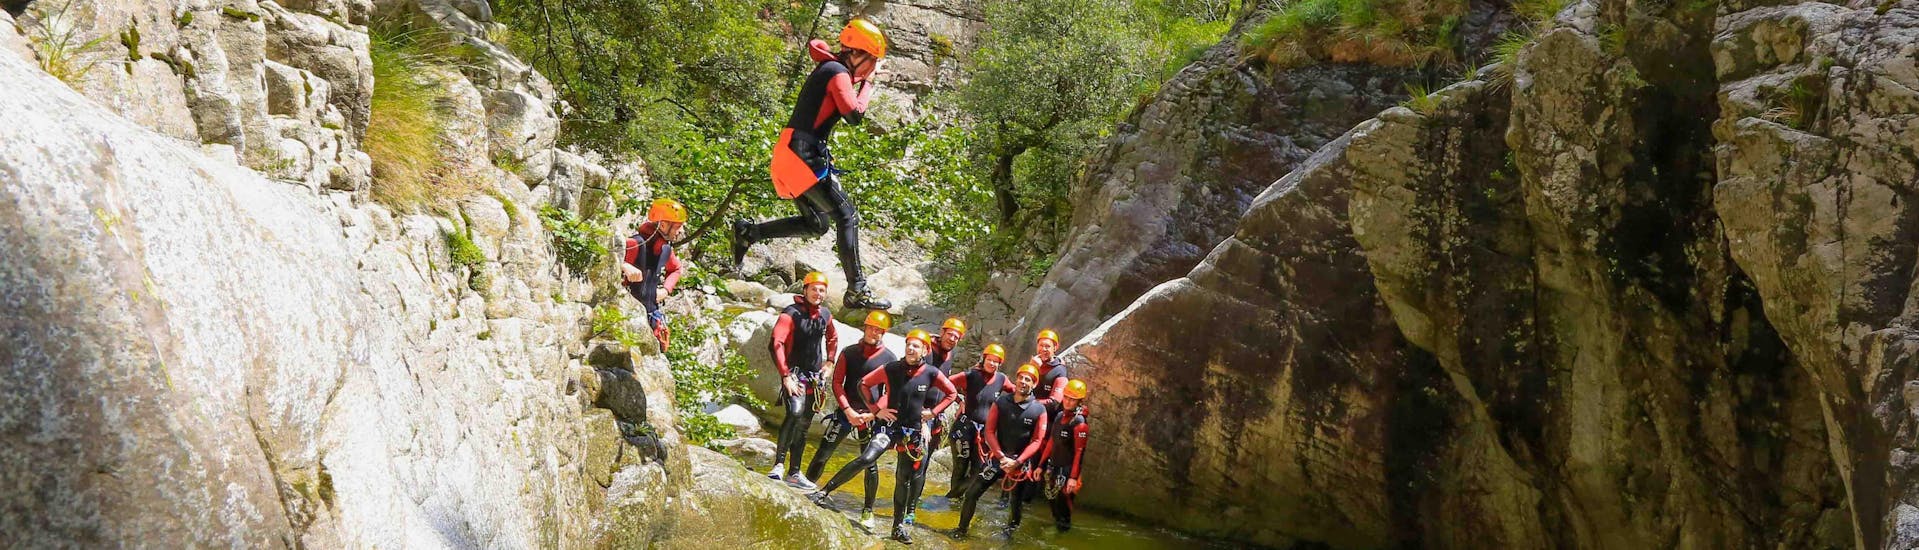 Un touriste saute dans le canyon de Baracci pendant son activité de canyoning découverte avec rêves de cimes.